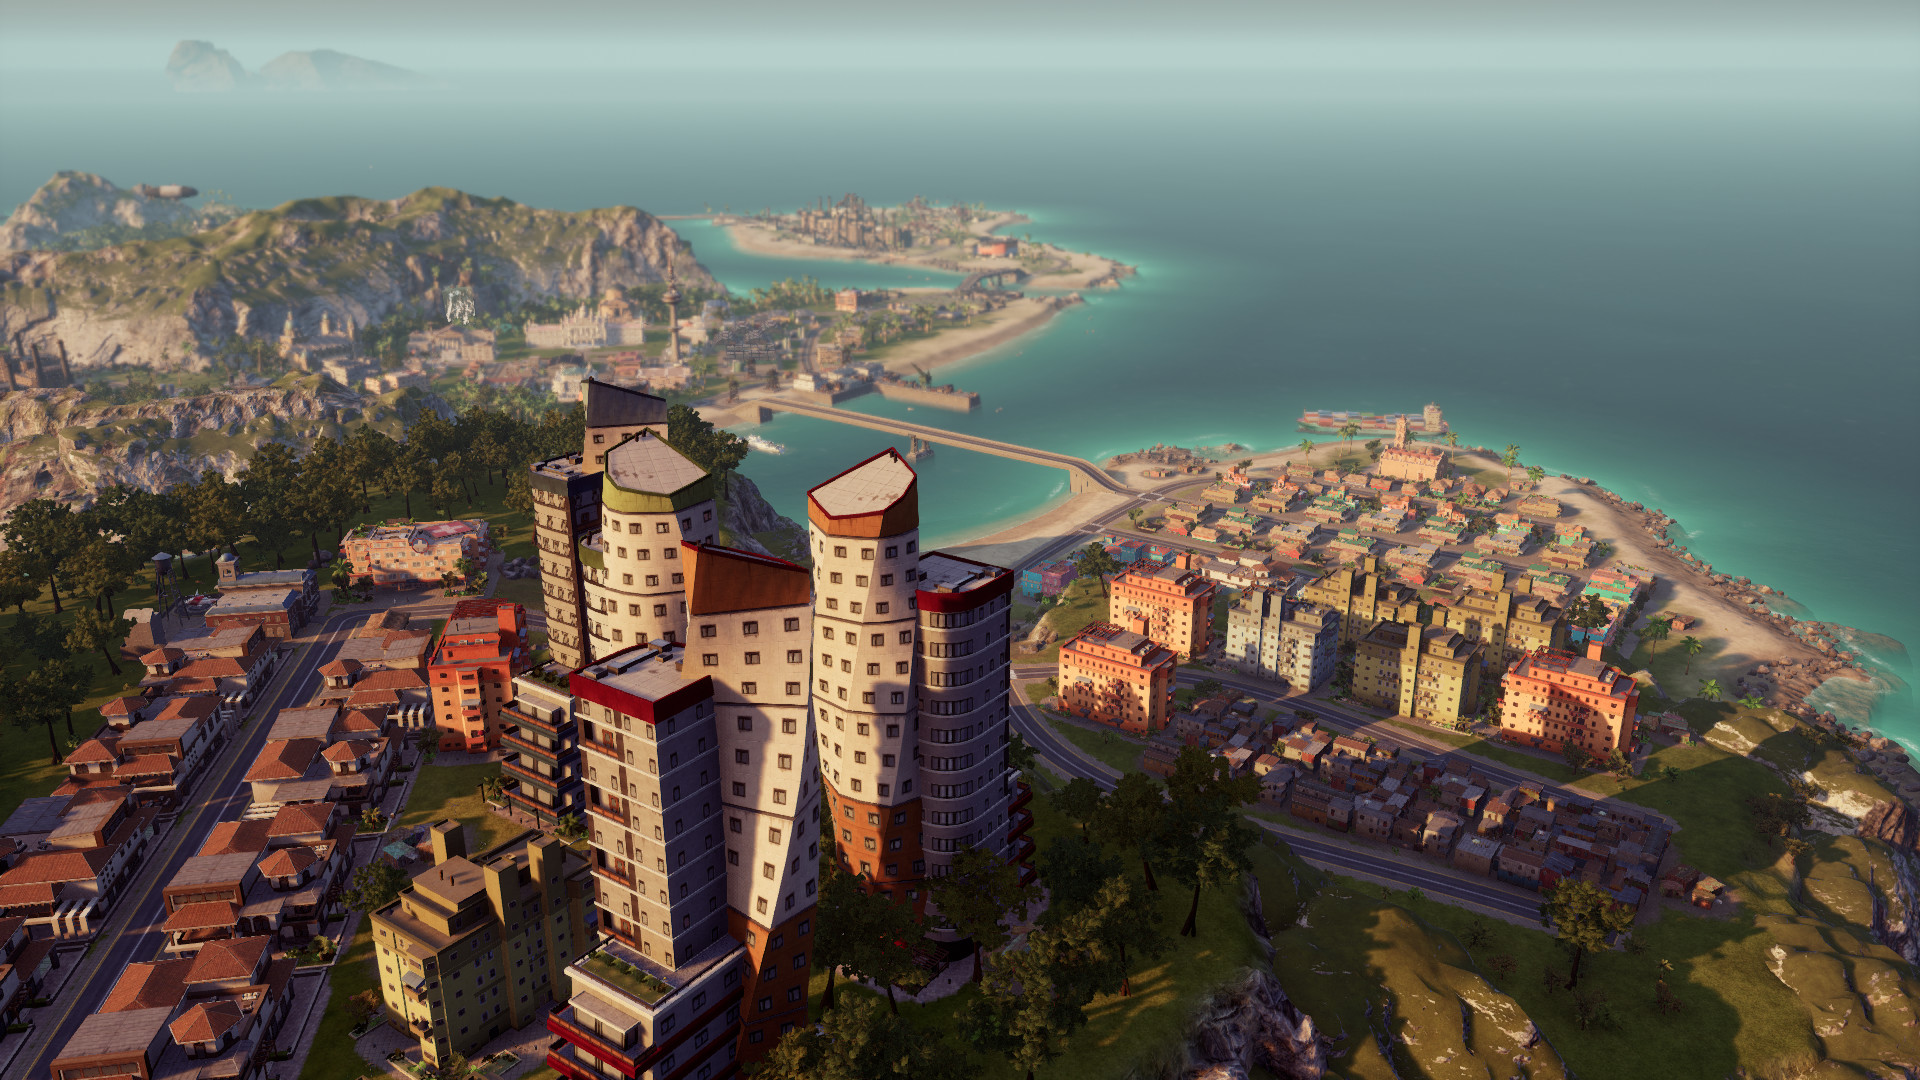 تحميل لعبة بناء المدن Tropico 6: El Prez Edition - 2019 نسخة ريباك بمساحة  4.8 GB Ss_ddc43006e213b23981b1baed150fff6bb47883ec.1920x1080